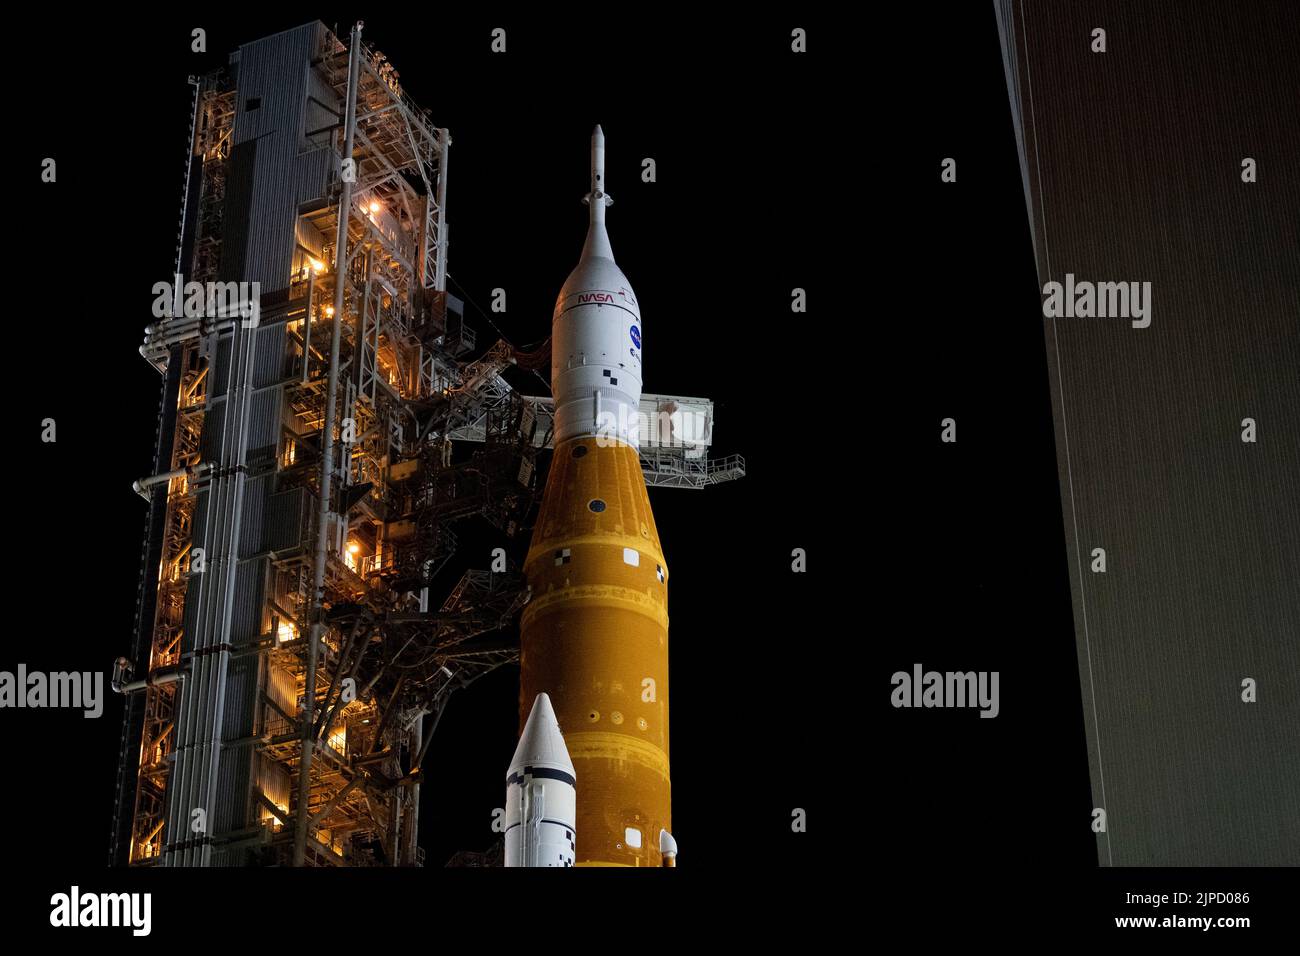 Il razzo Space Launch System (SLS) della NASA con la navicella spaziale Orion a bordo viene visto in cima a un lanciatore mobile mentre il braccio di accesso dell'equipaggio viene spostato in posizione per essere lanciato sul Launch Pad 39B, martedì 16 agosto 2022, al Kennedy Space Center della NASA in Florida. La missione Artemis i della NASA è il primo test integrato dei sistemi di esplorazione dello spazio profondo dell’agenzia: La navicella spaziale Orion, il razzo SLS e i sistemi di supporto a terra. Il lancio del test di volo senza equipaggio è previsto entro il 29 agosto 2022. Foto di Joel Kowsky/NASA via CNP/ABACAPRESS.COM Foto Stock